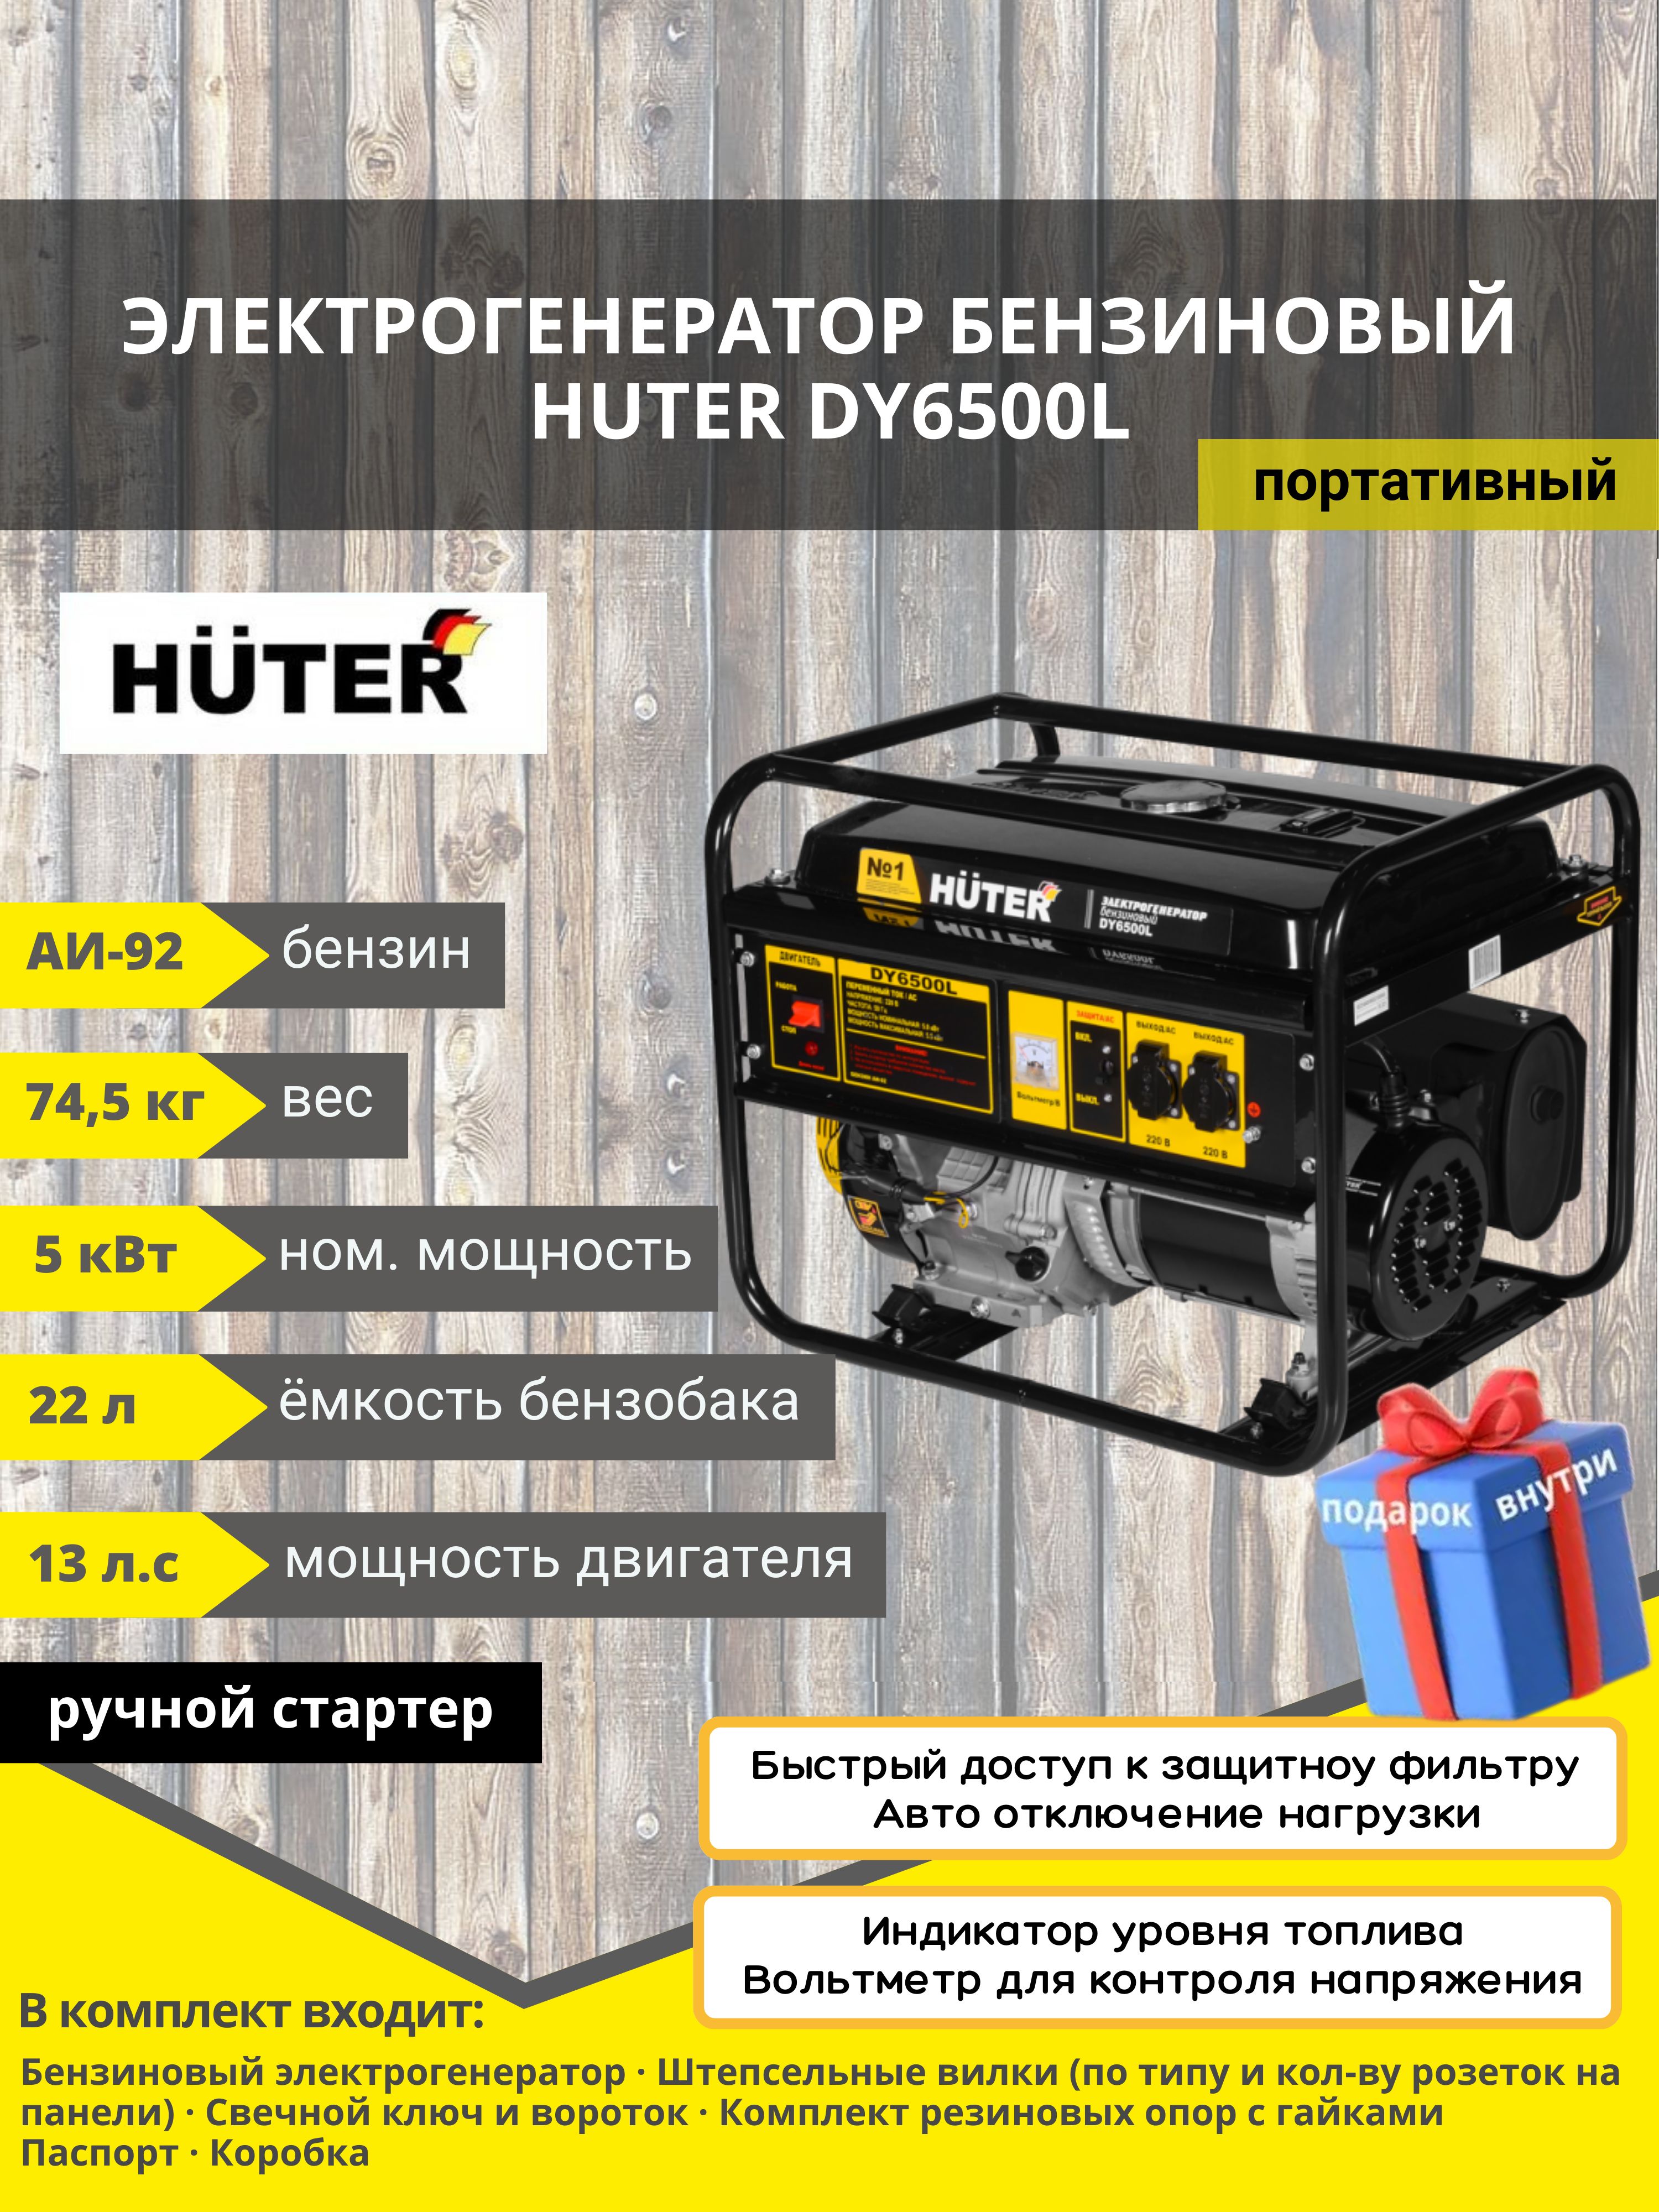 5 huter отзывы. Huter dy6500l. Dy4000l Huter статор. Внешние Размеры рамы бензинового генератора Хутер dy6500lxa с АВР. M5 -Pro Huter как пользоваться услугами.